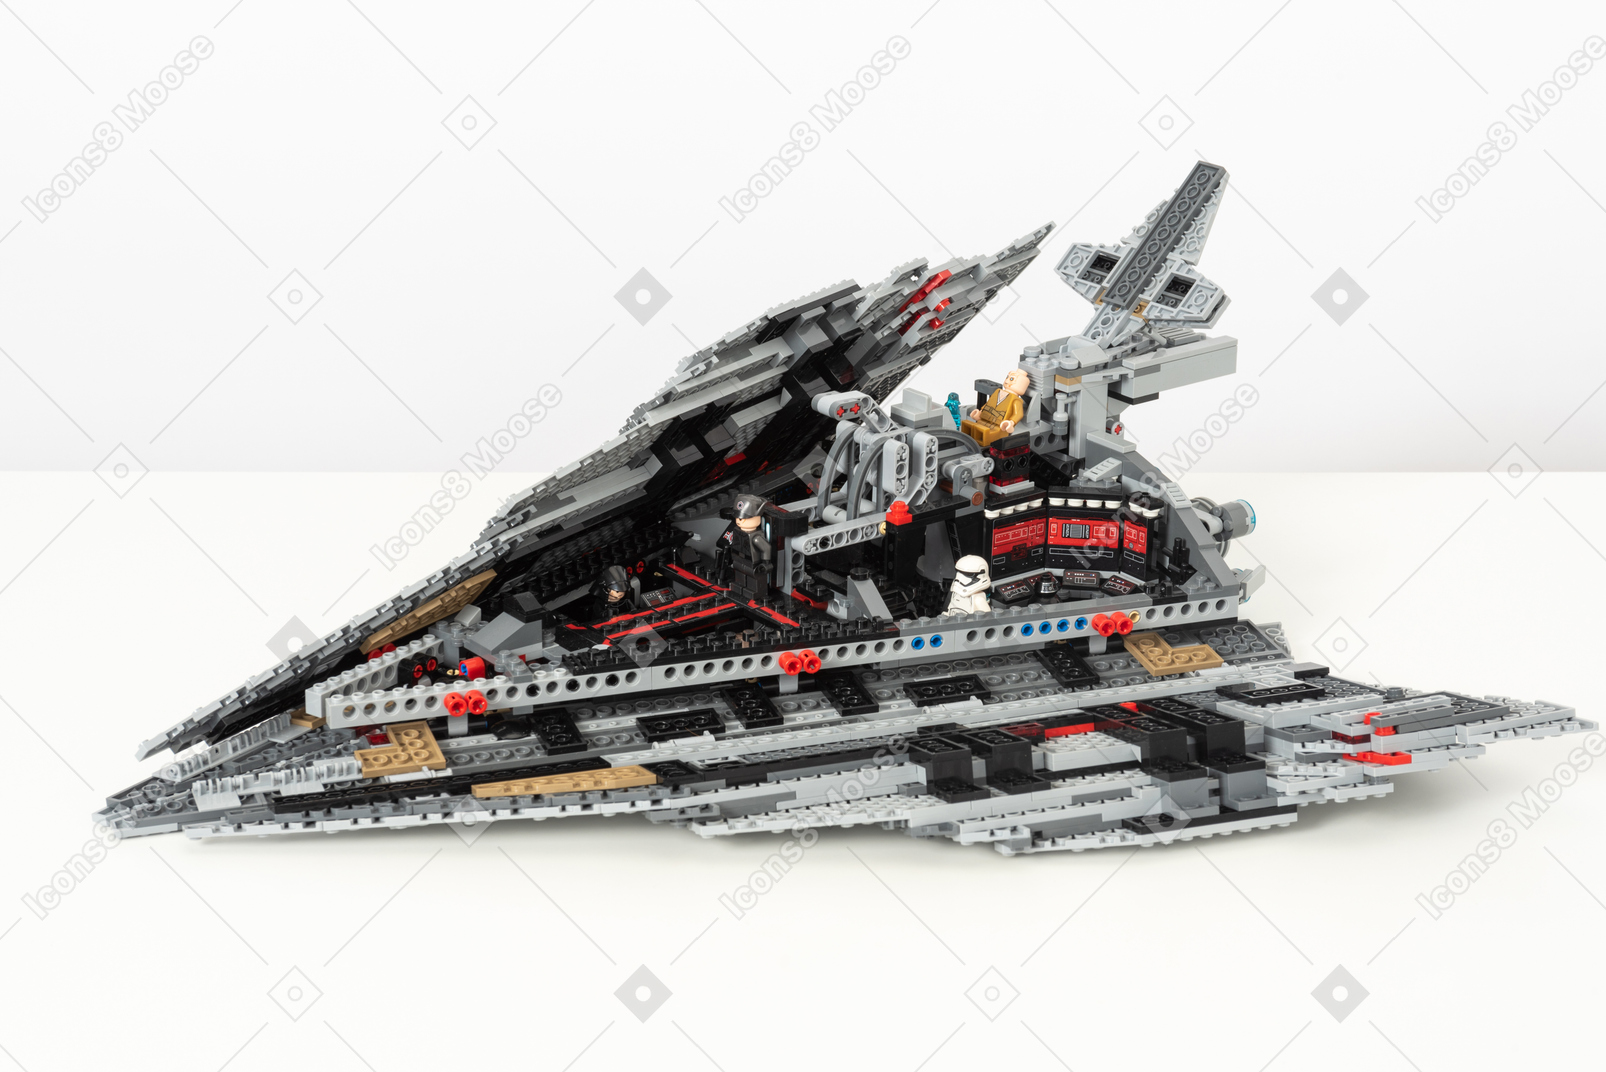 Lego spaceship on a white background